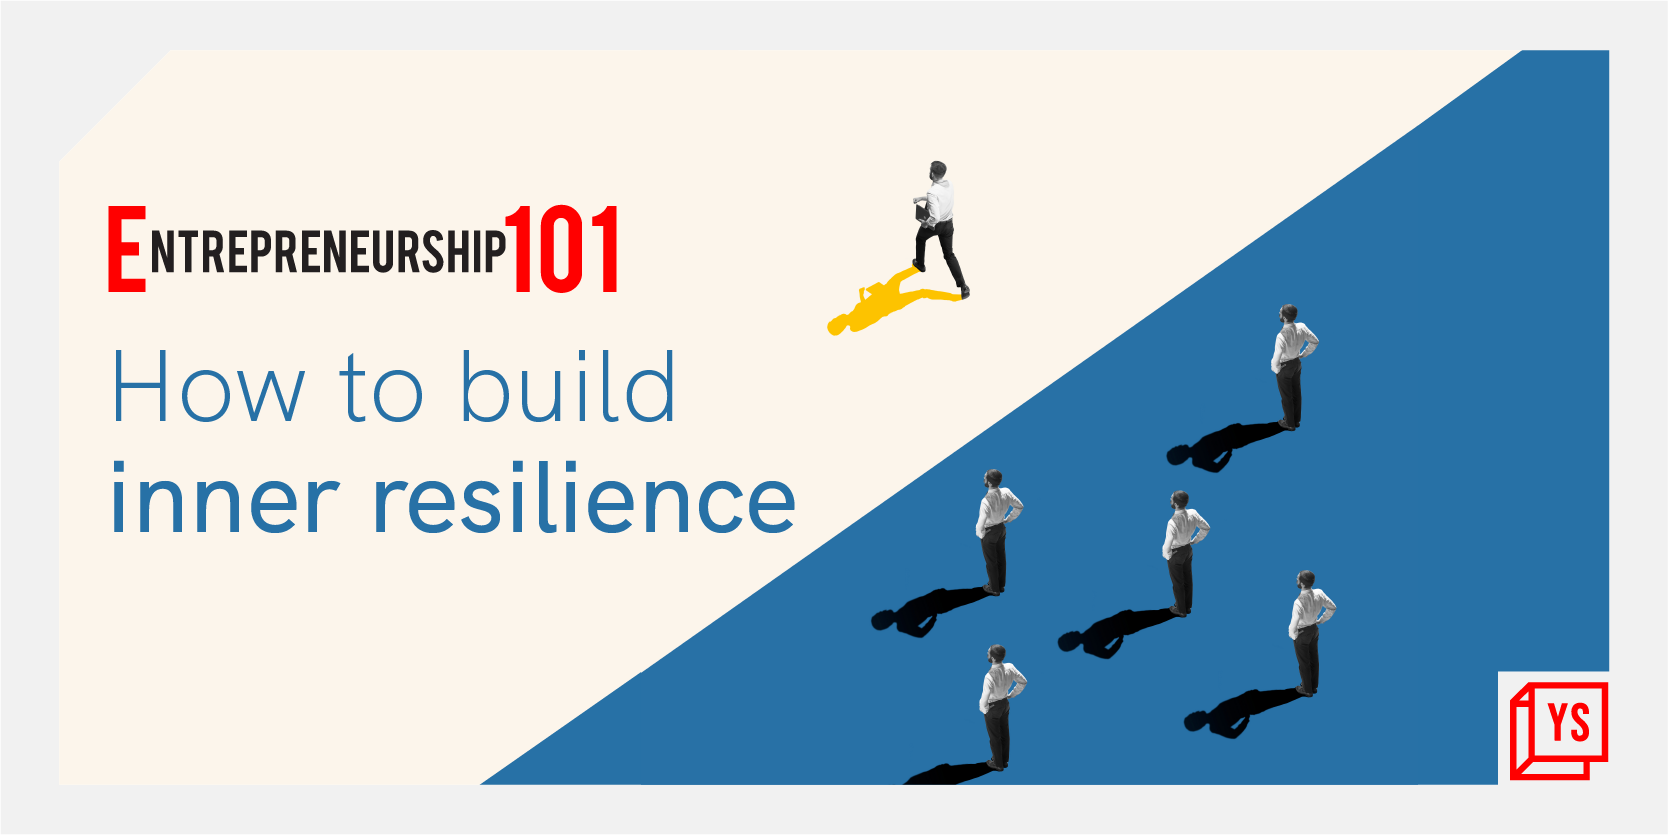 Entrepreneurship 101: How to build inner resilience